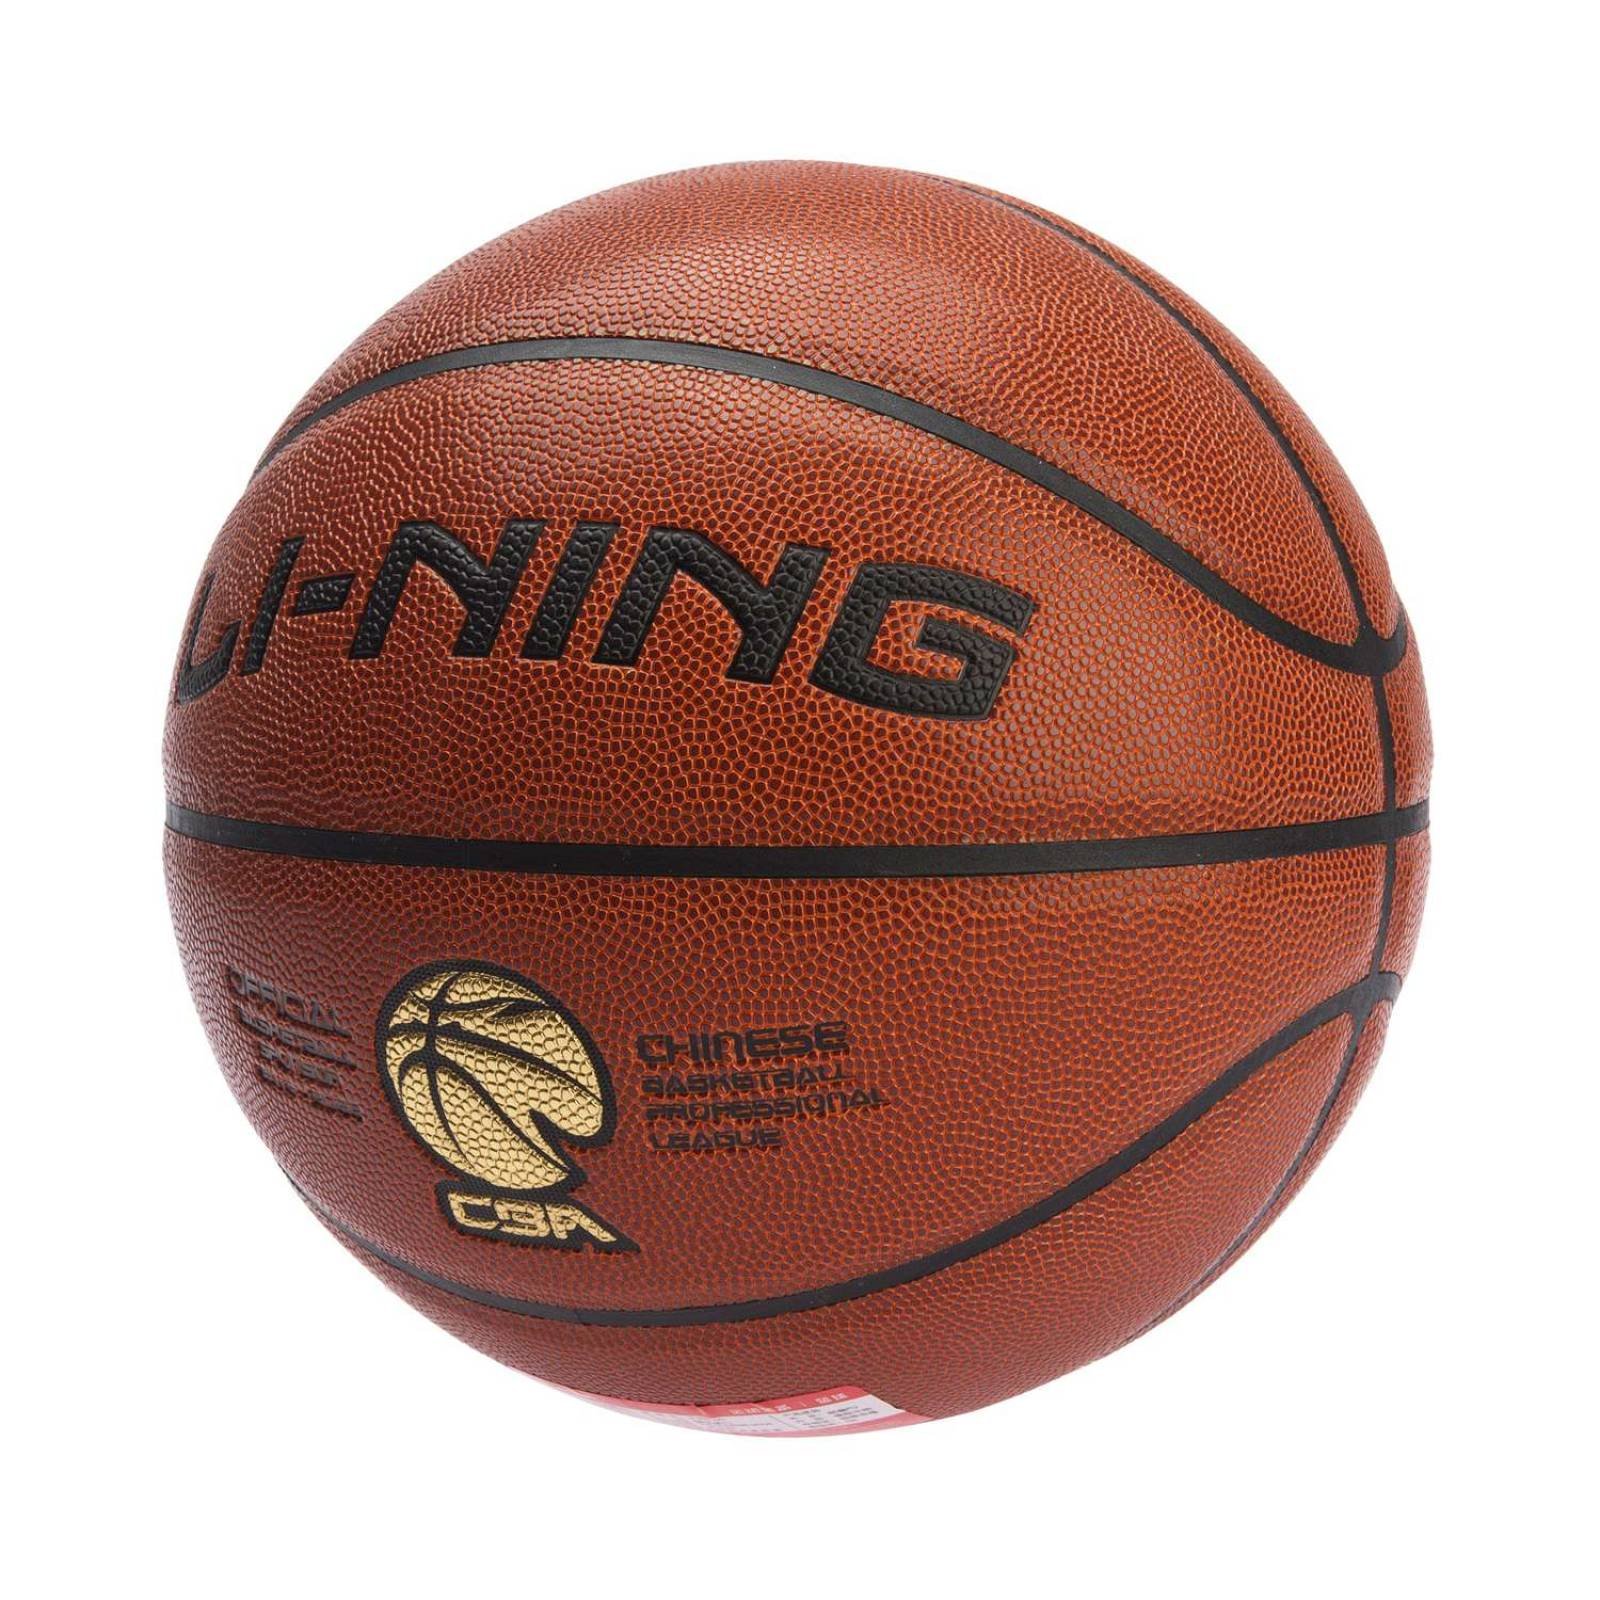 Balon de Basketball Li-Ning ABQN072-1 color Café Unisex